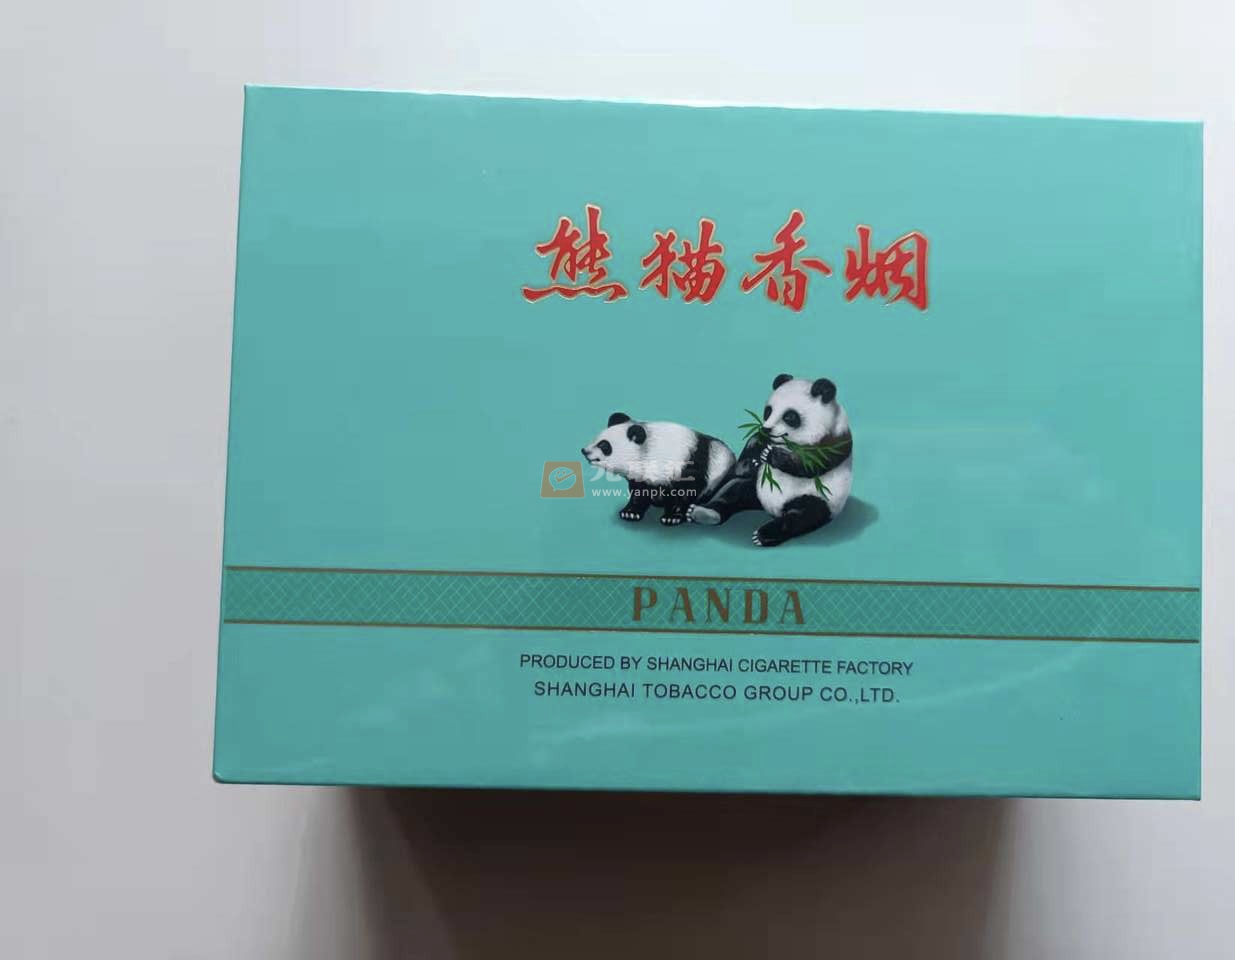 熊猫(典藏版)相册 904_65085